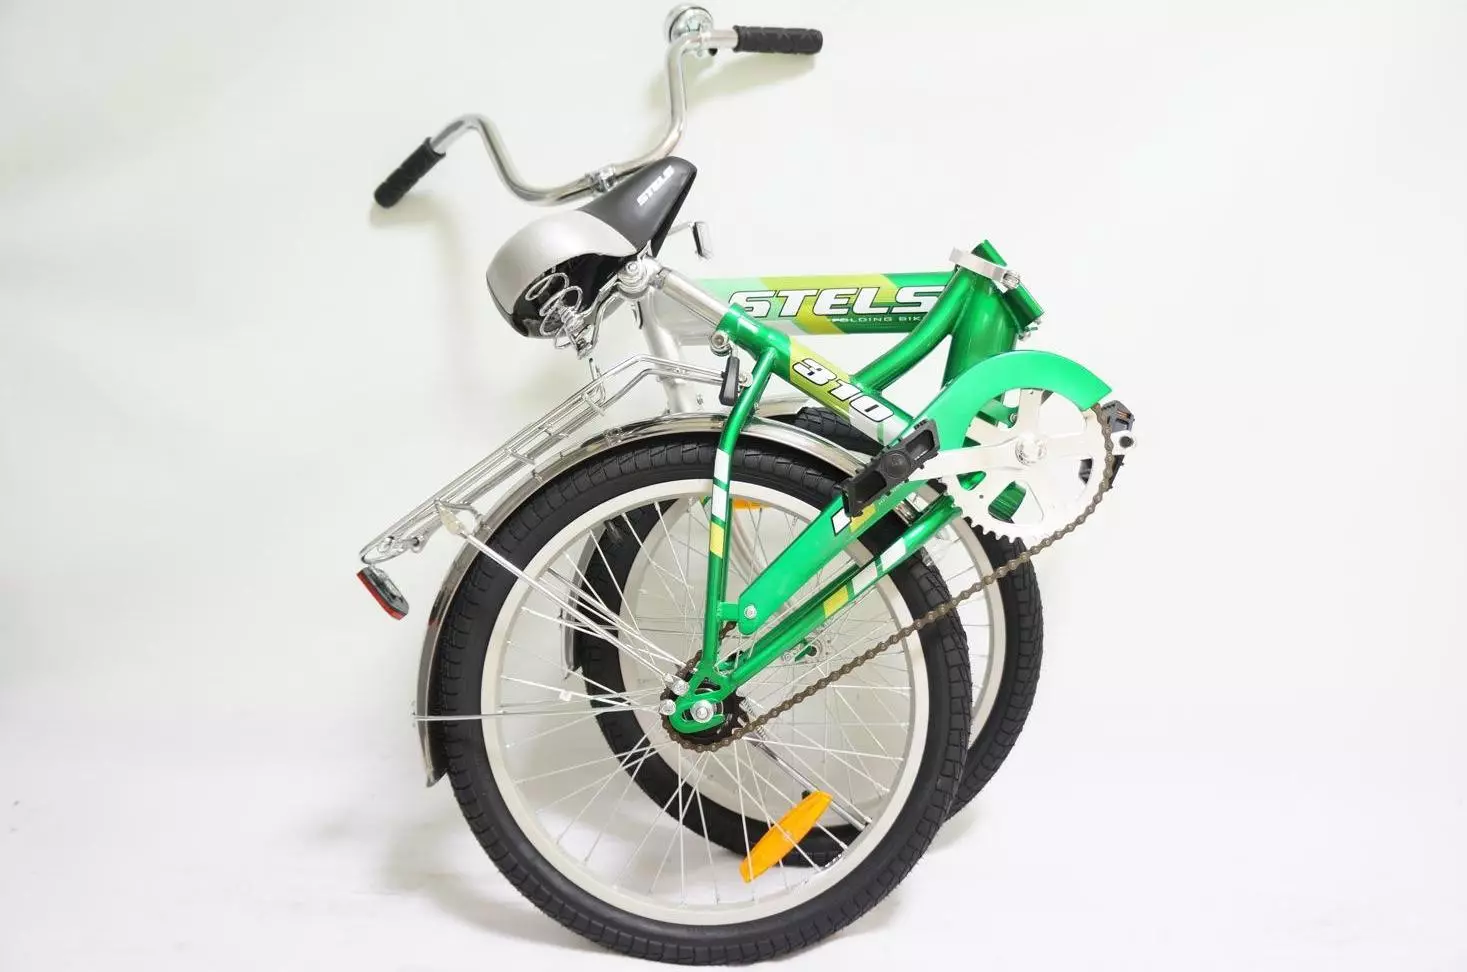 Avançado ou stels: Que tipo de bicicleta é melhor? Comparação de especificações técnicas. O que escolher? 20327_15